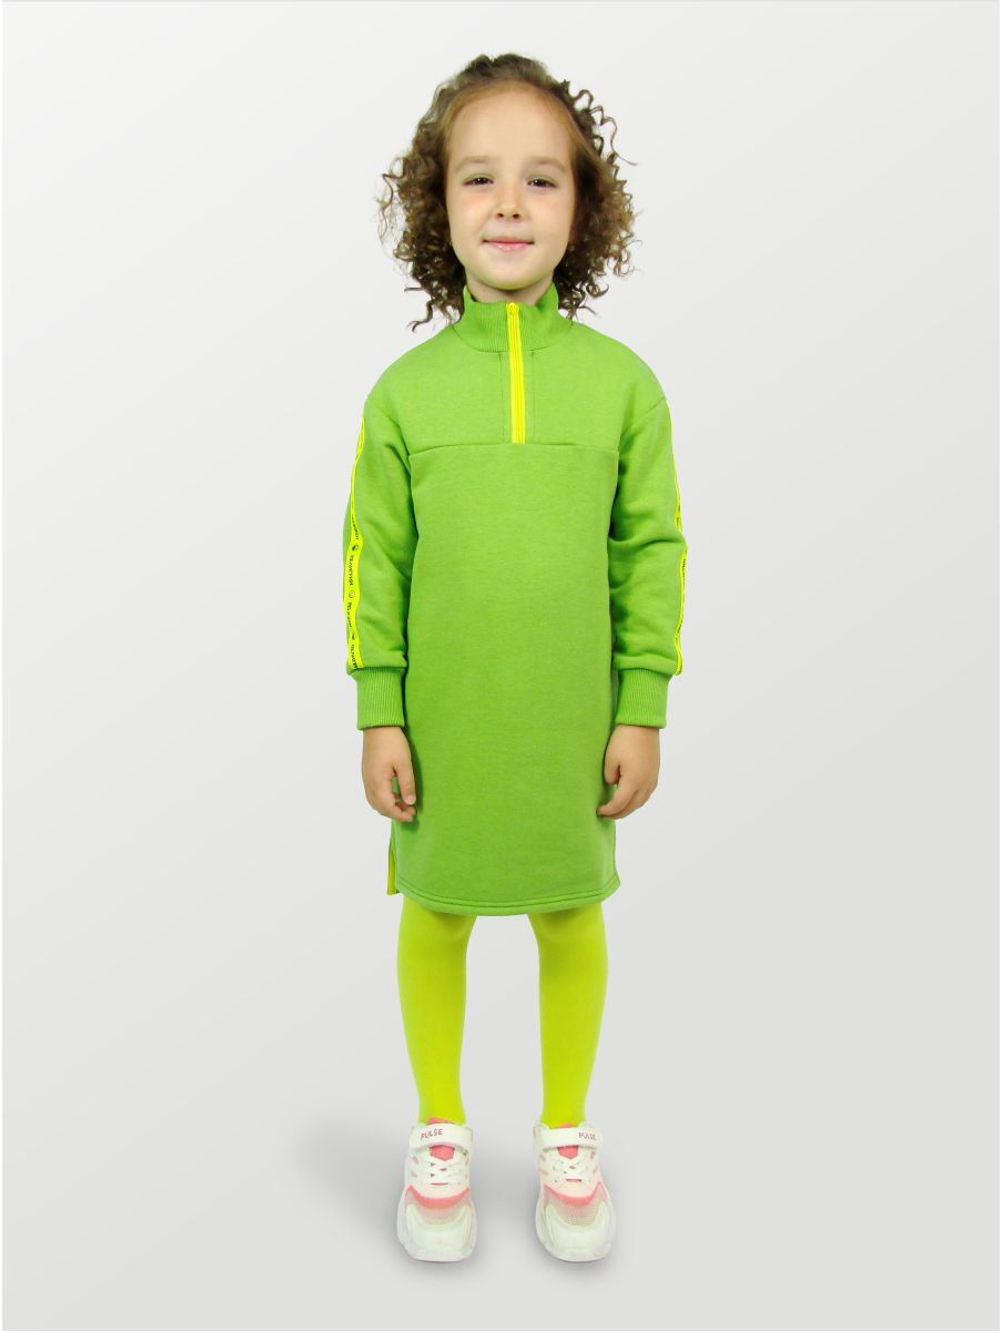 Платье для девочки, модель №1, рост 116 см, зеленое